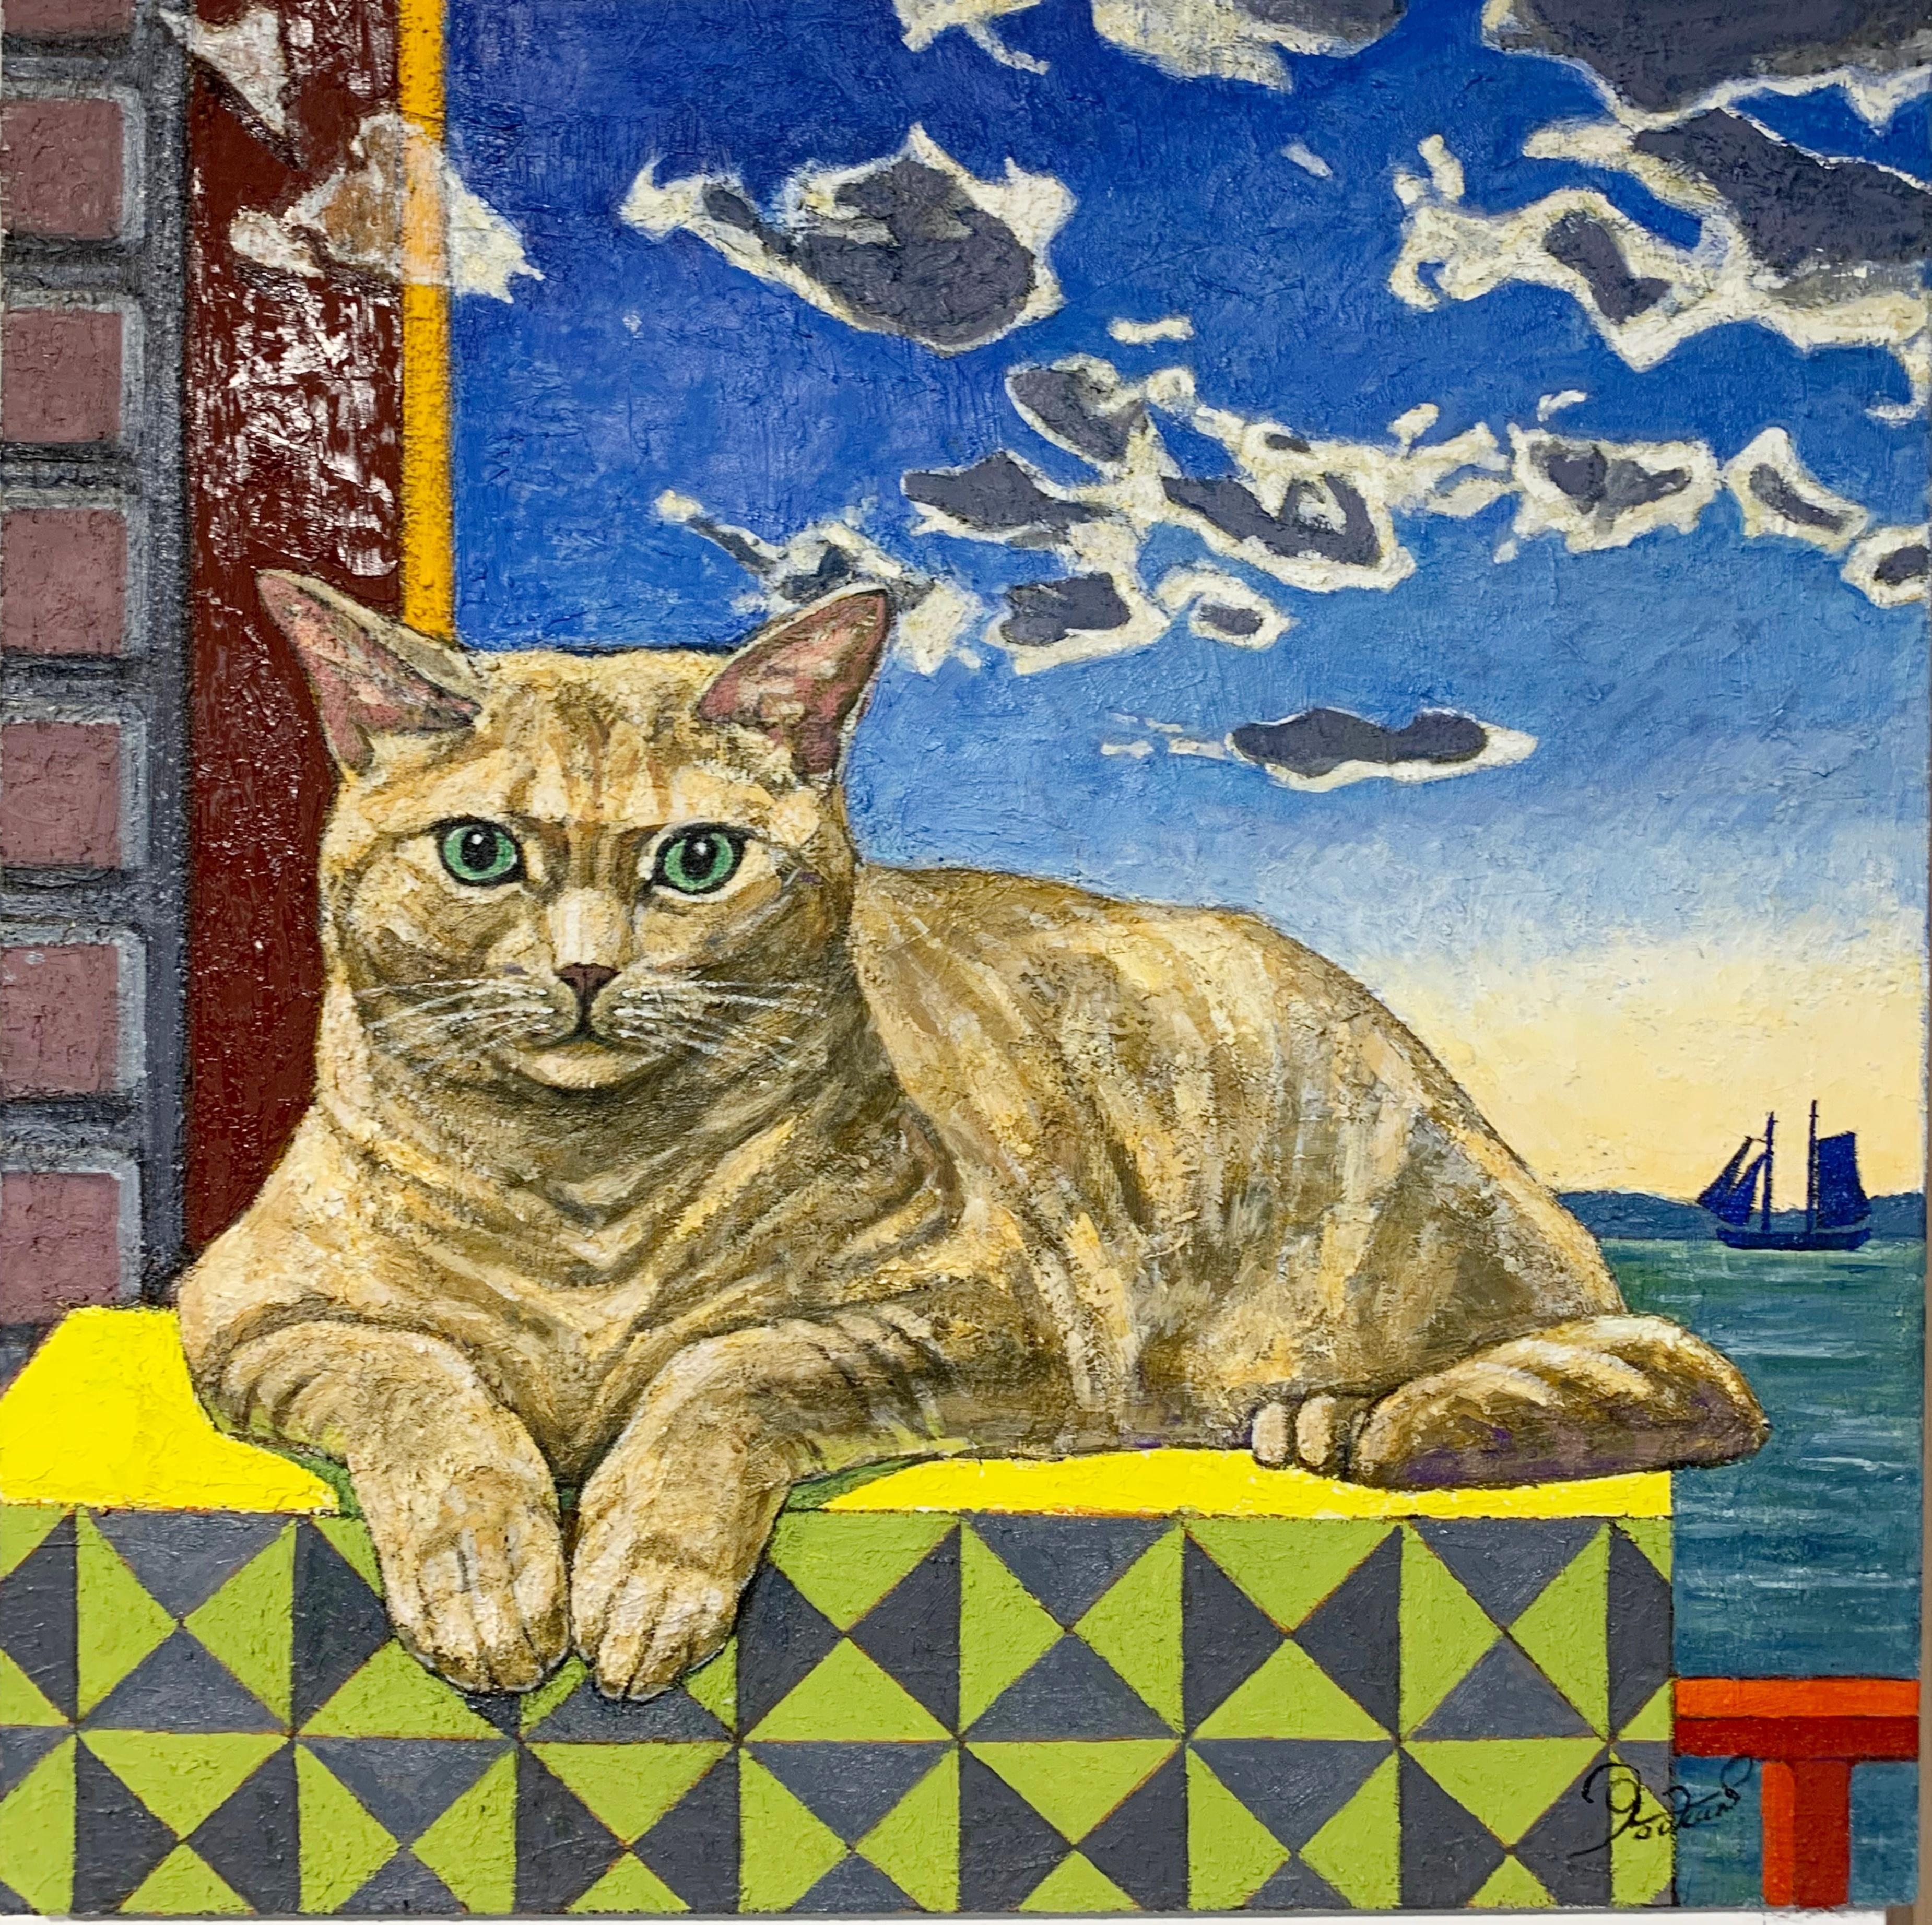 Orange Cat's Thoughts (Originalgemälde des bekannten japanisch-amerikanischen Malers)